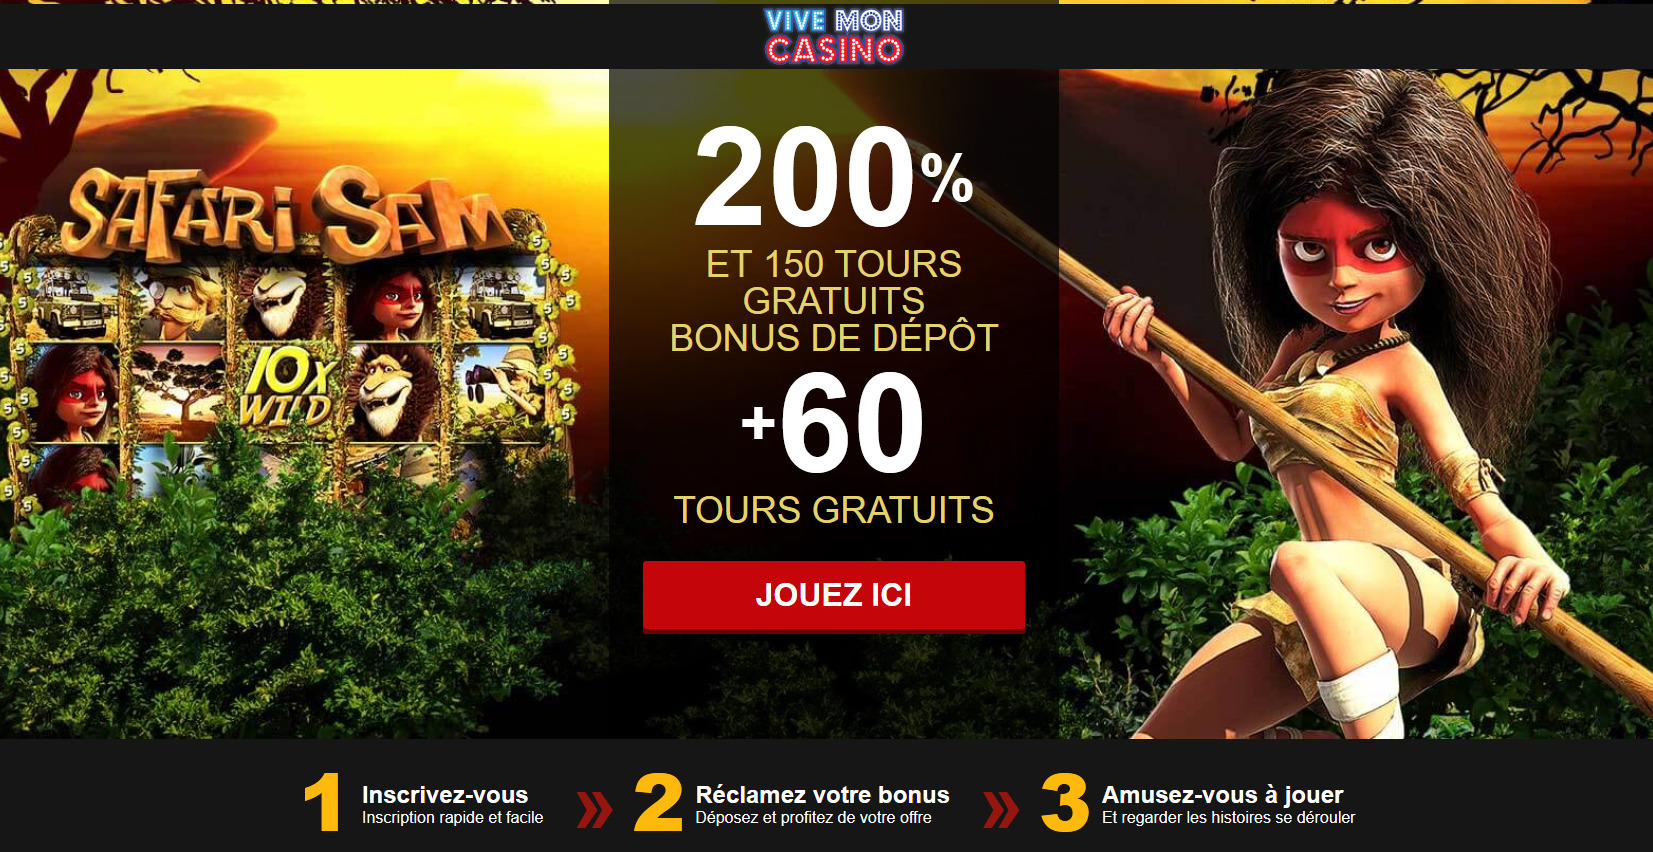 200 % ET
                                150 TOURS GRATUITS BONUS DE DÉPÔT + 60
                                TOURS GRATUITS